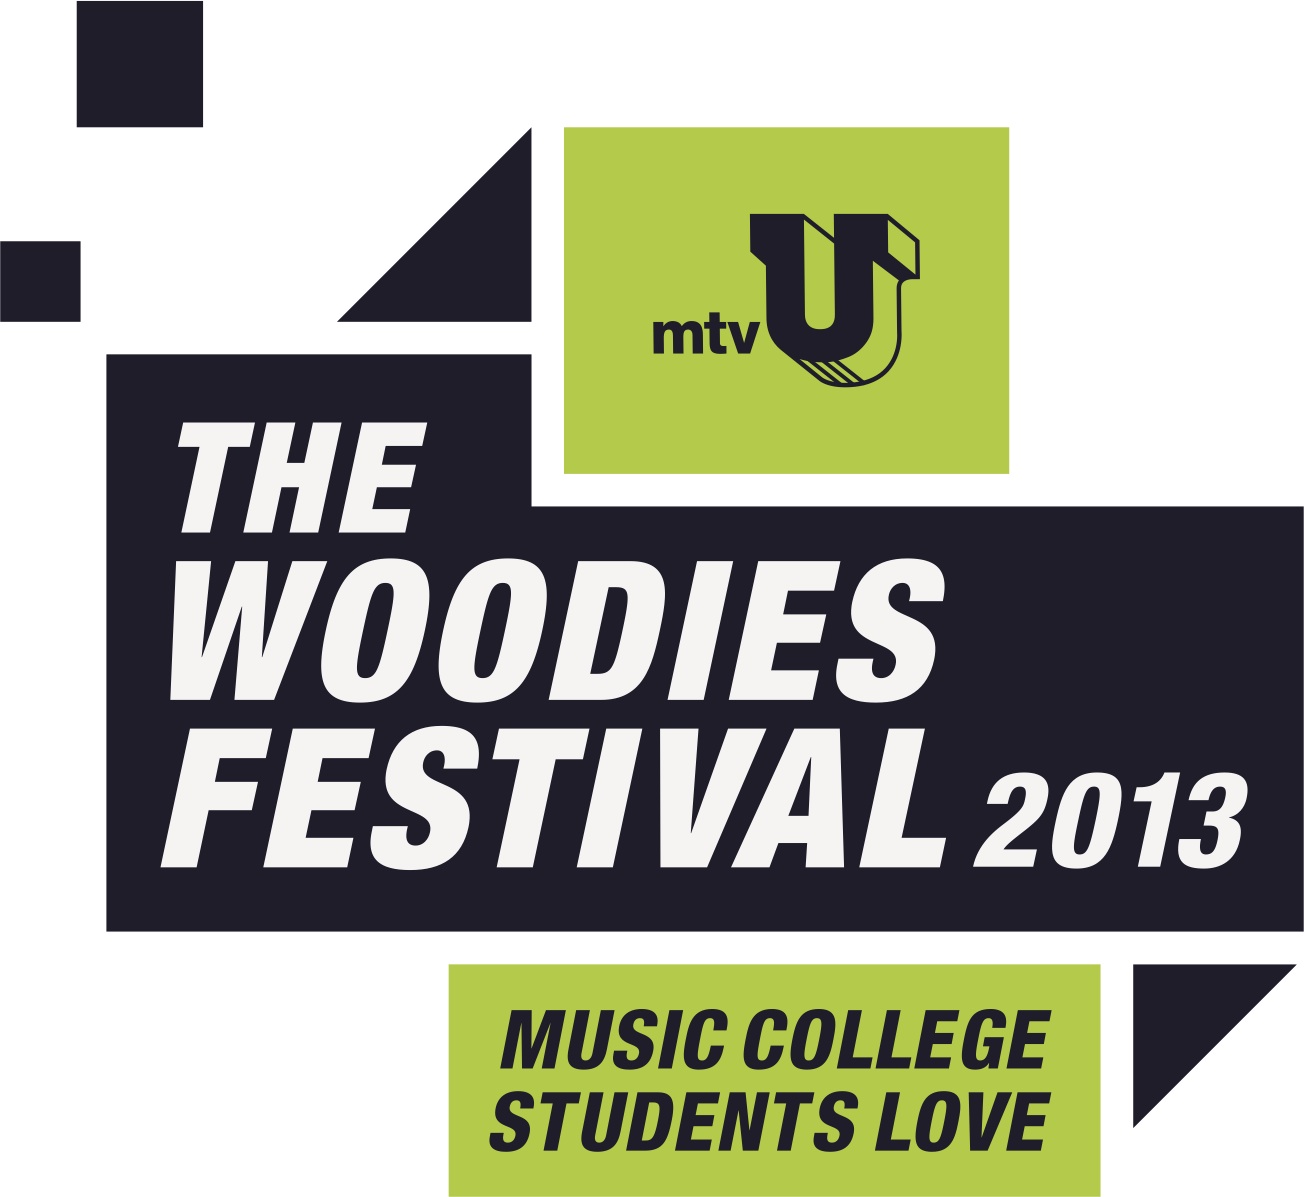 Mtvu Woodies Tour 2013